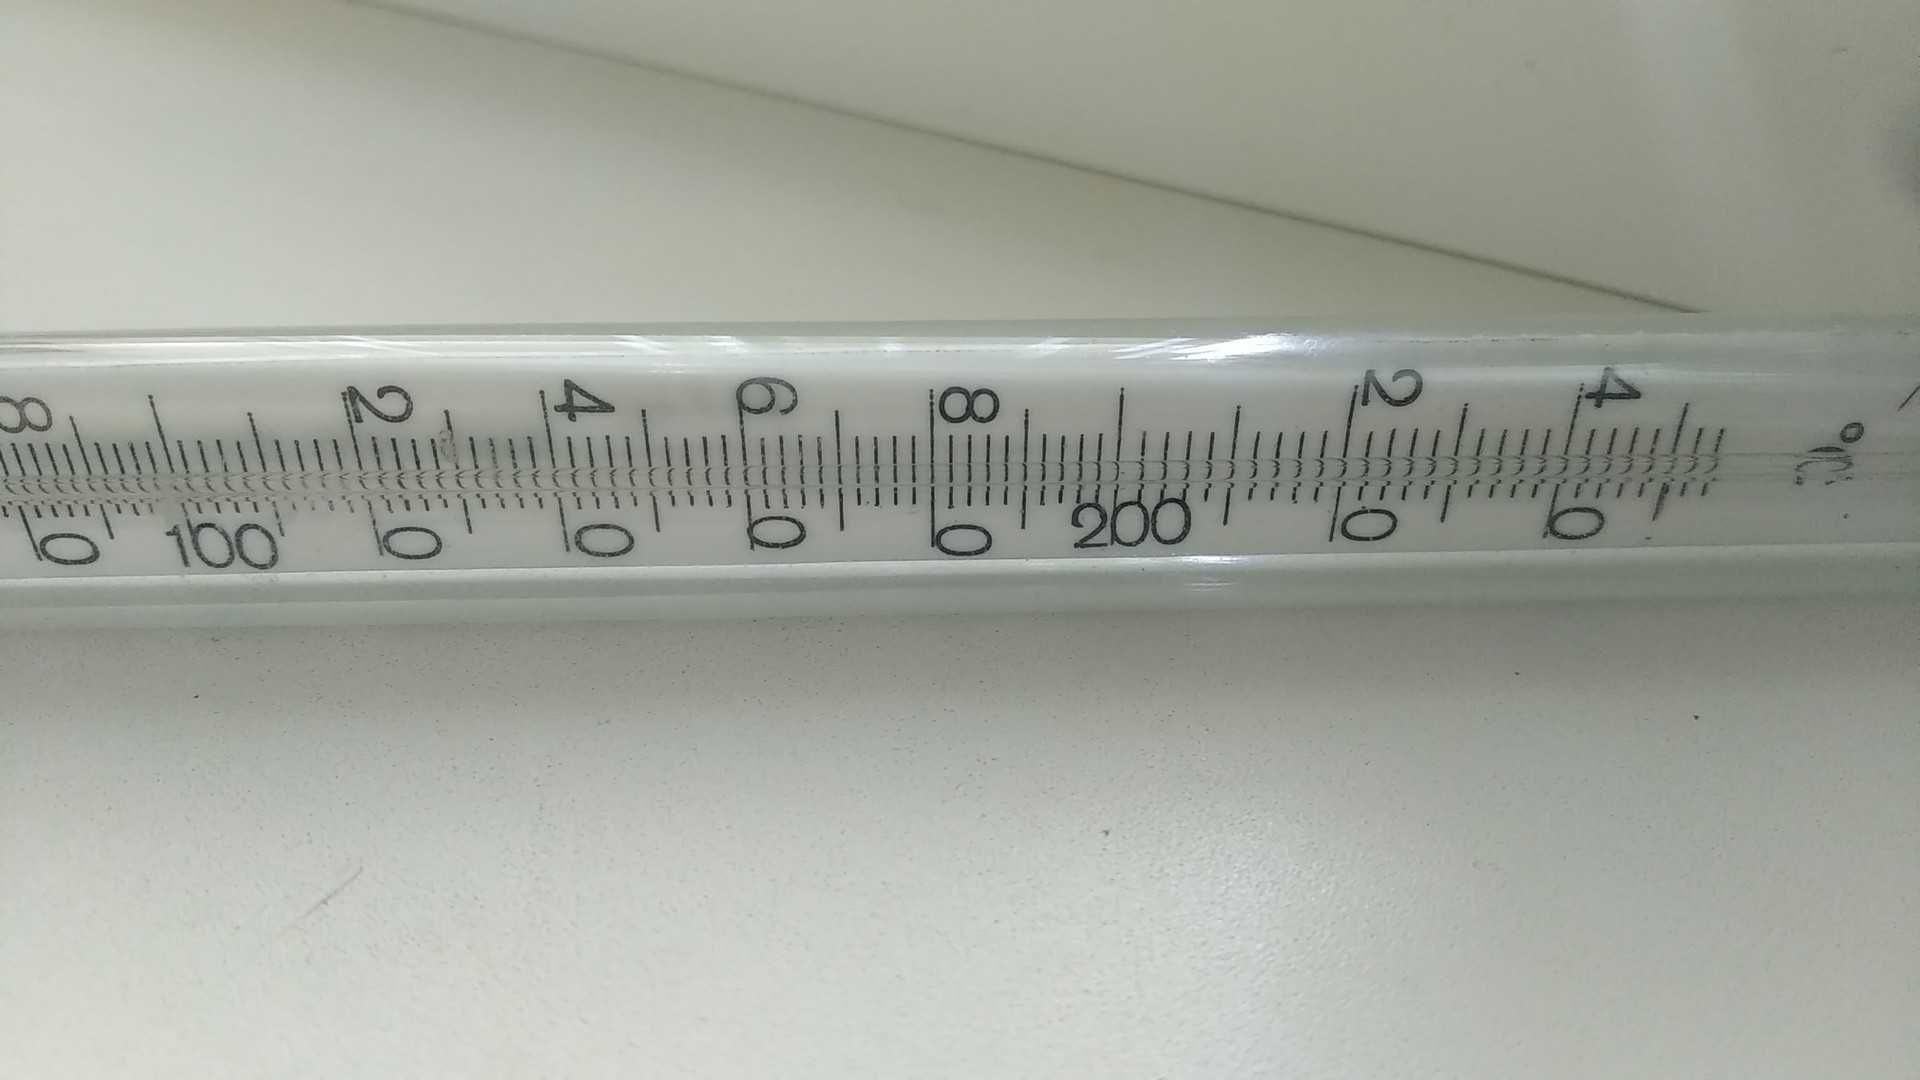 Термометр от 0 до 250 градусов Цельсия.